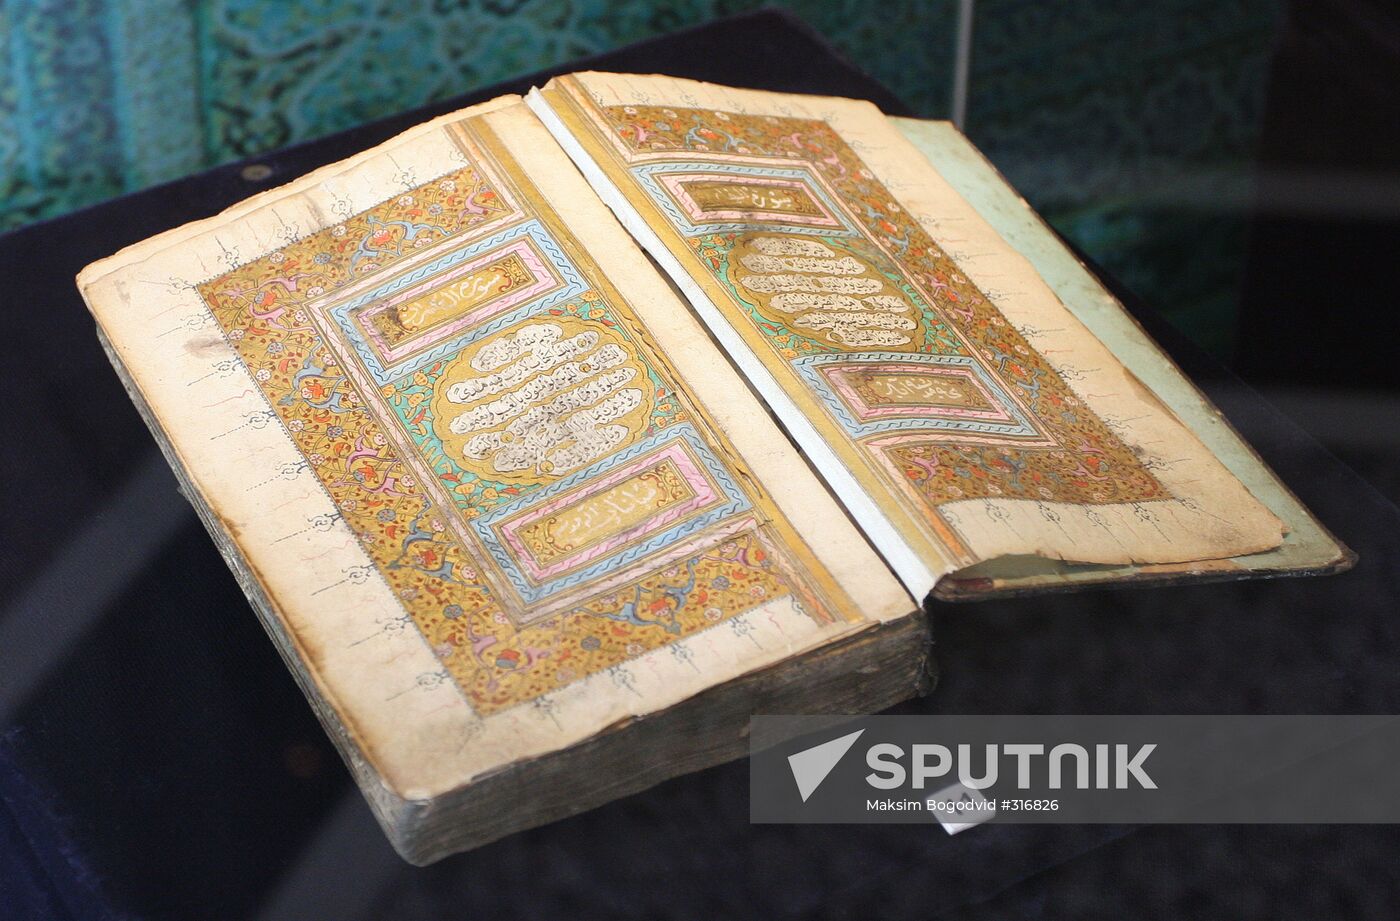 Quran manuscript of the 19th century